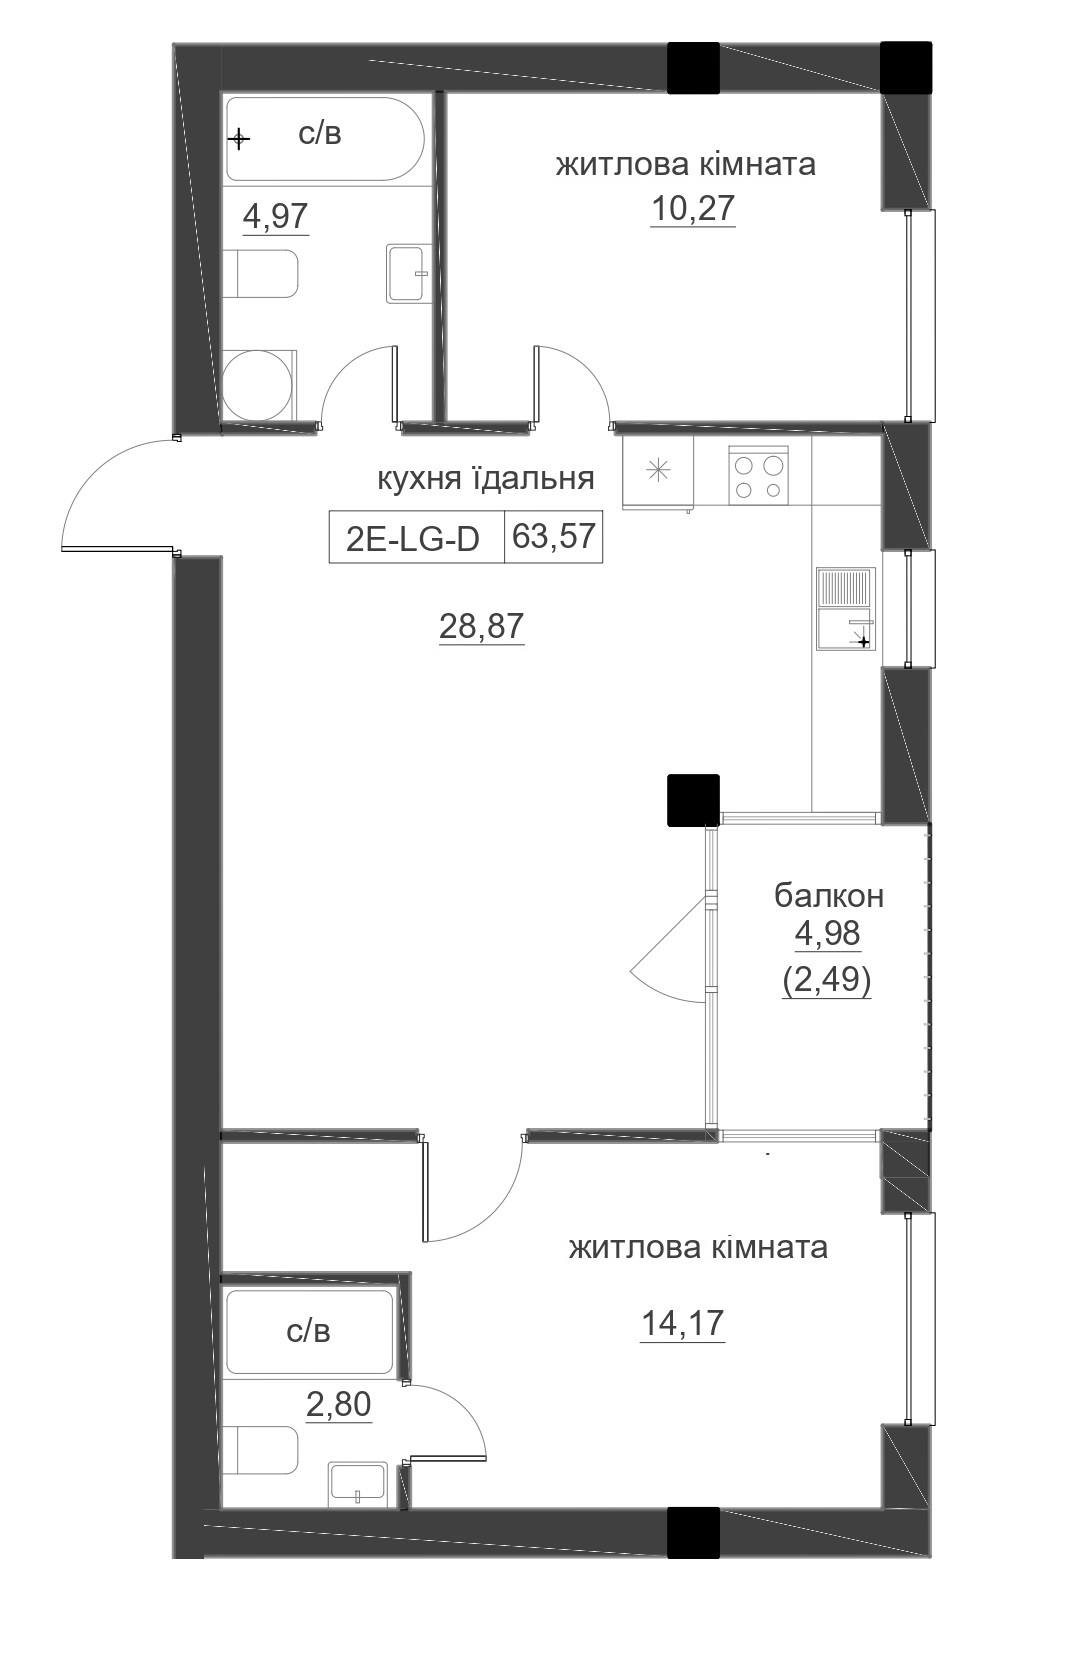 Планировка 2-к квартира площей 63.57м2, LR-005-09/0006.